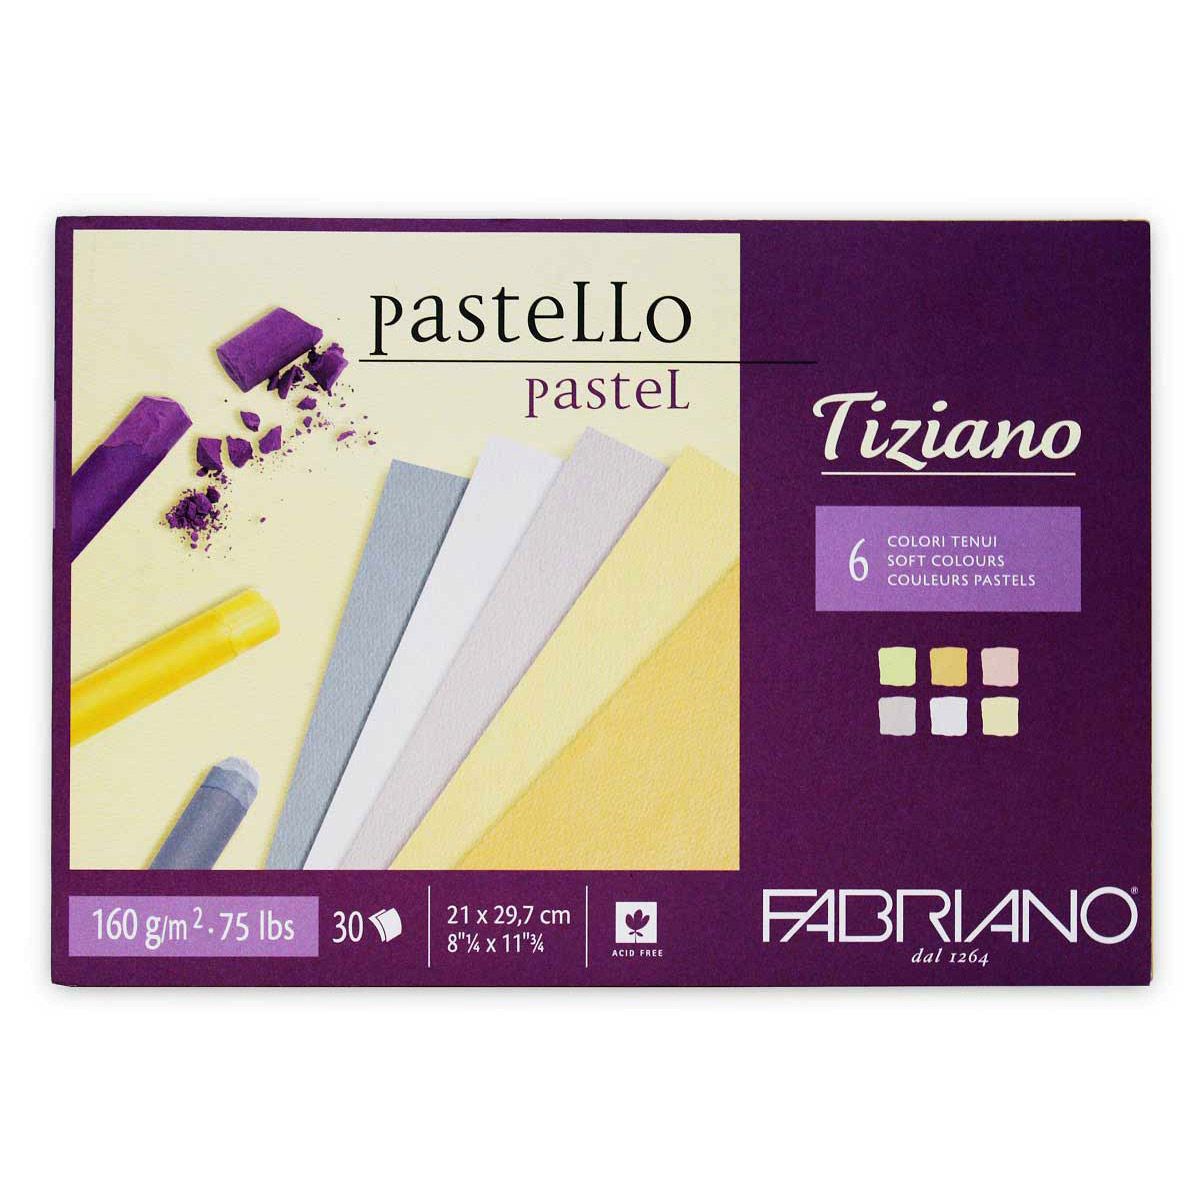 Fabriano Tiziano Pastel Pad (6 Soft Colours) 8"-1/4 x 11"-3/4